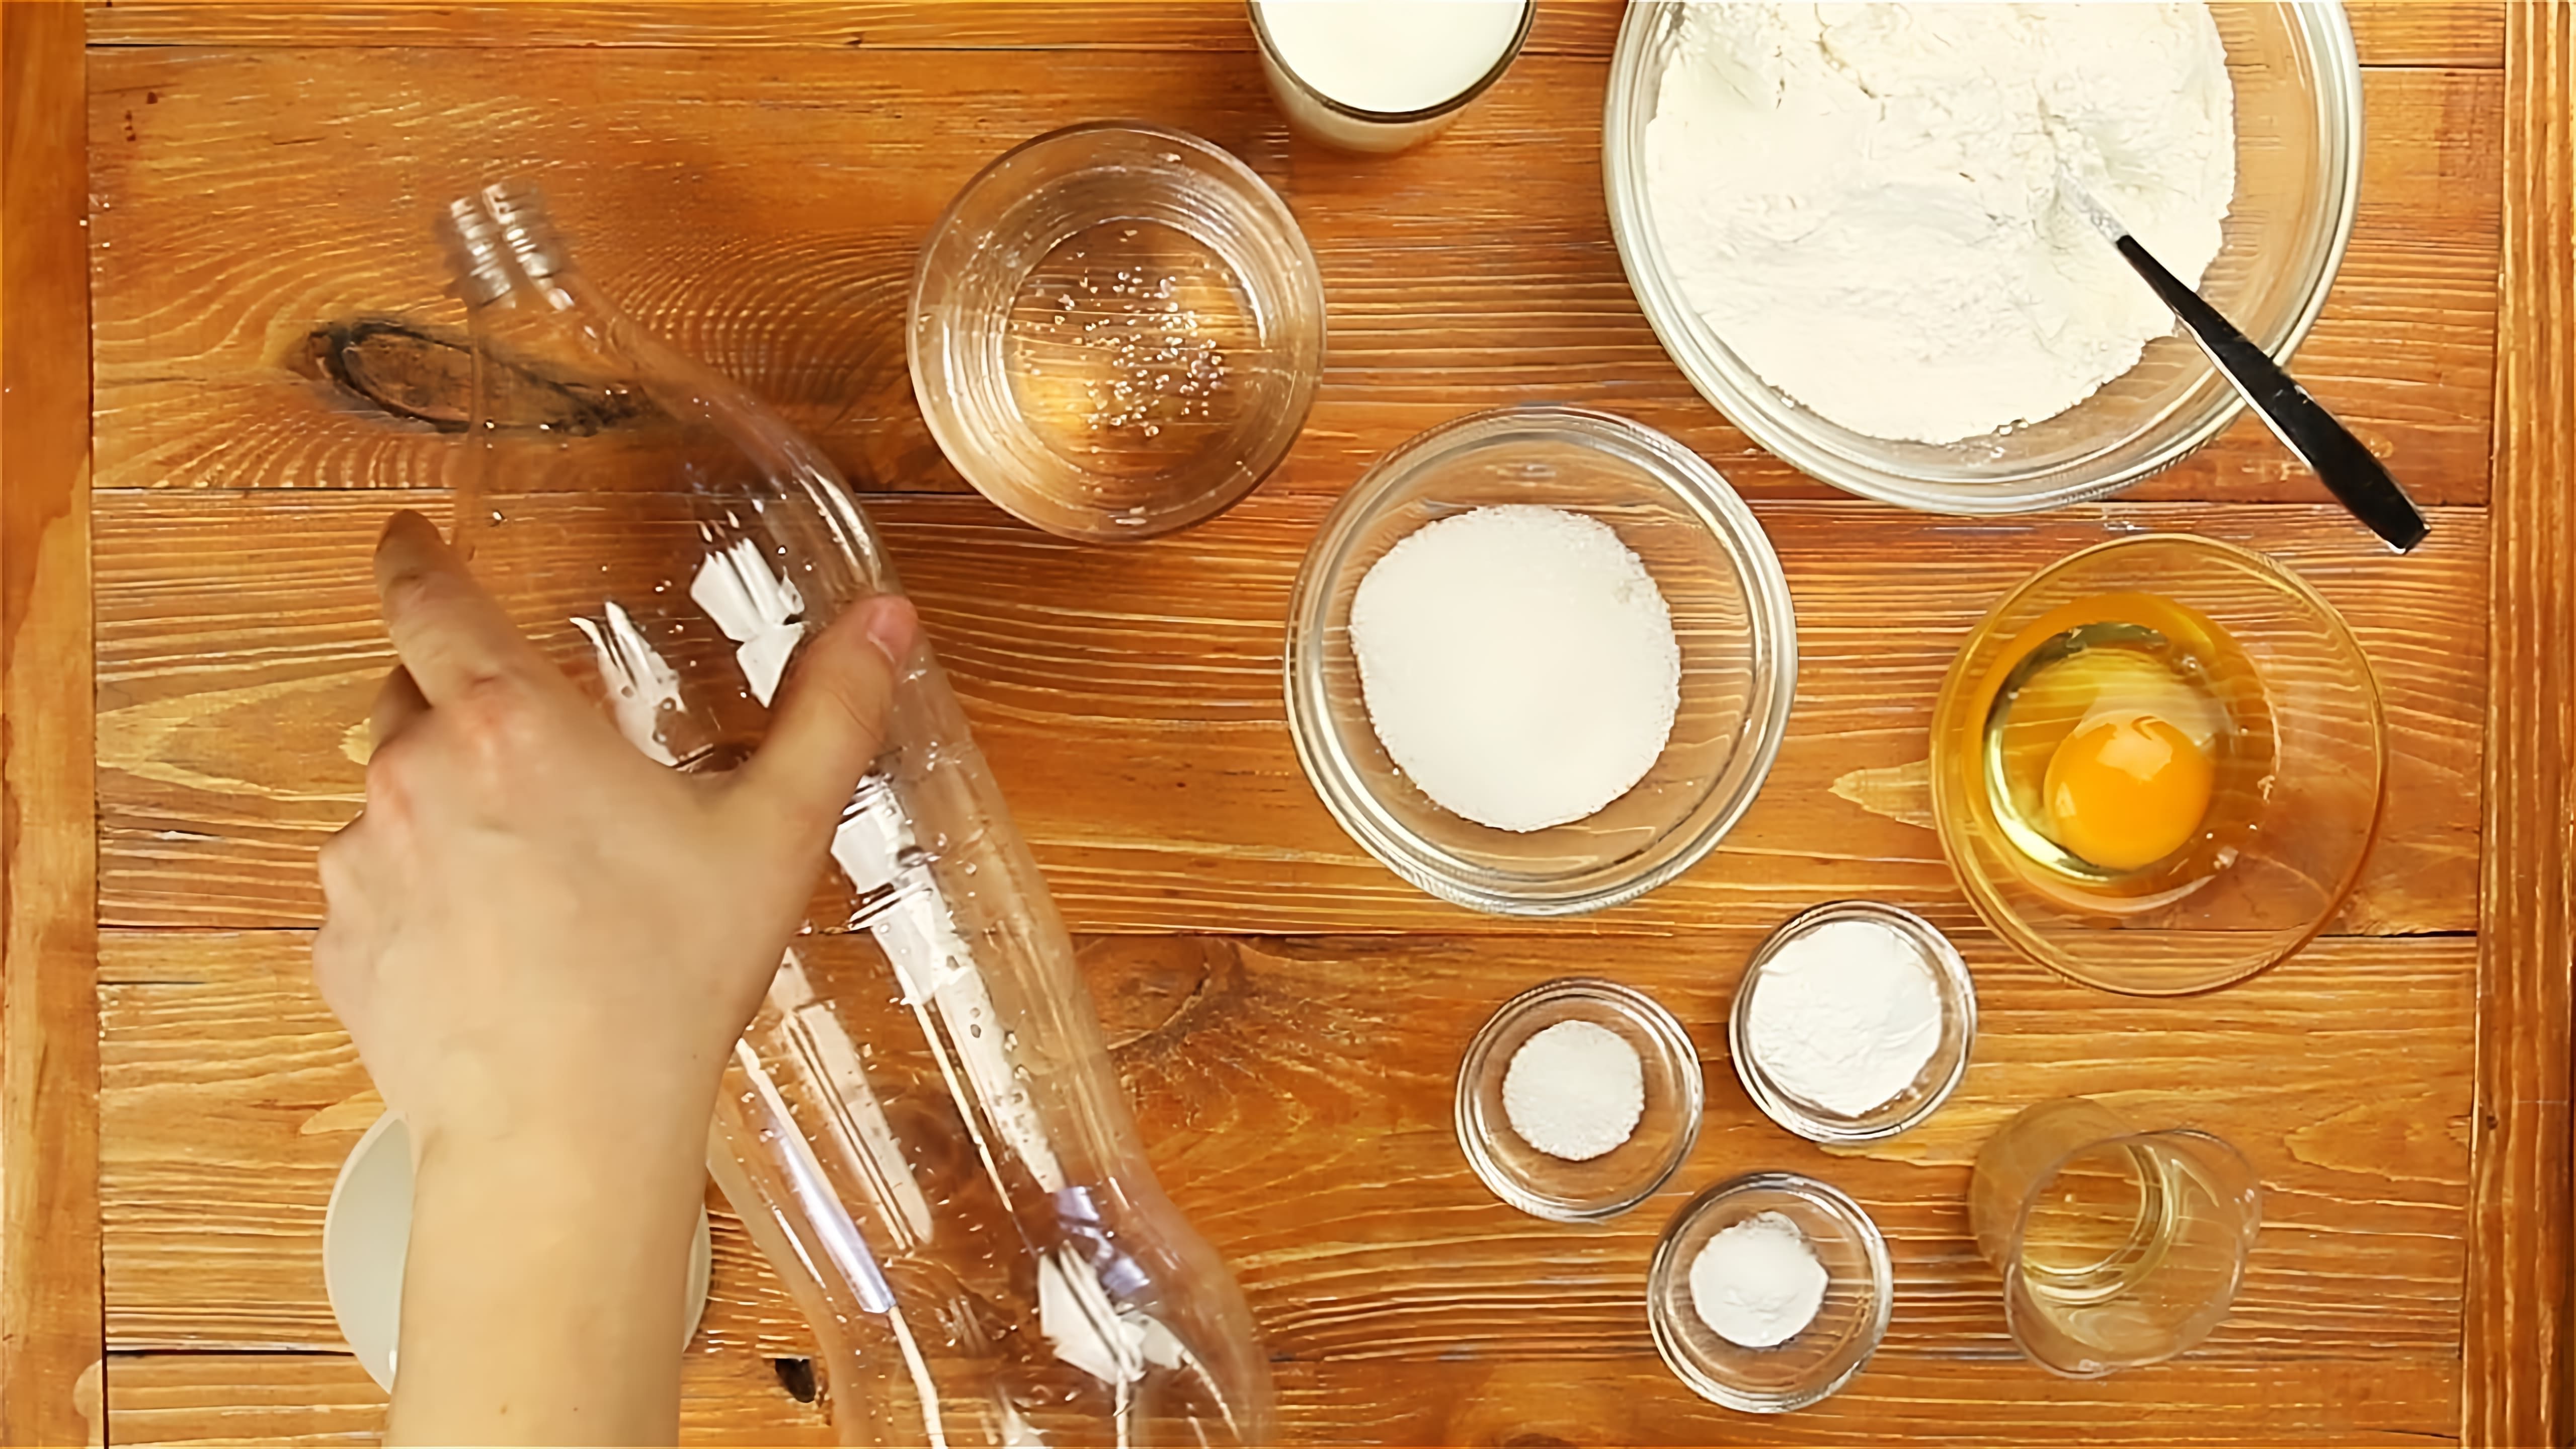 В этом видео-ролике будет рассказано о том, как приготовить пышные блины в бутылке, используя рецепты от Со Вкусом